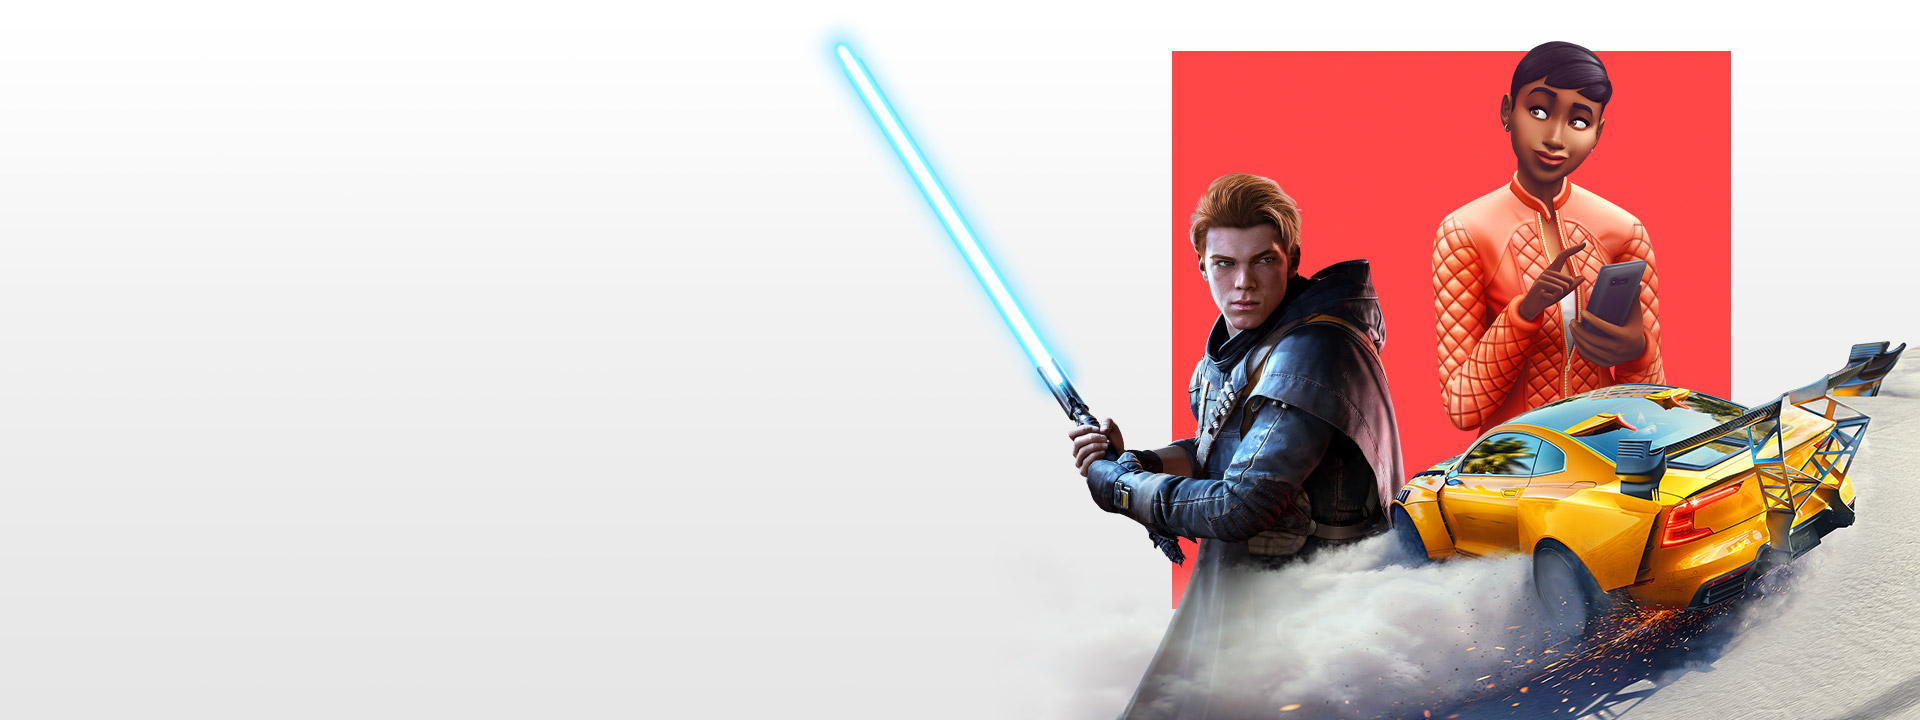 Một loạt các nhân vật từ các game EA khác nhau, bao gồm cả Star Wars Jedi: Fallen Order, The Sims 4 và Need for Speed Heat.